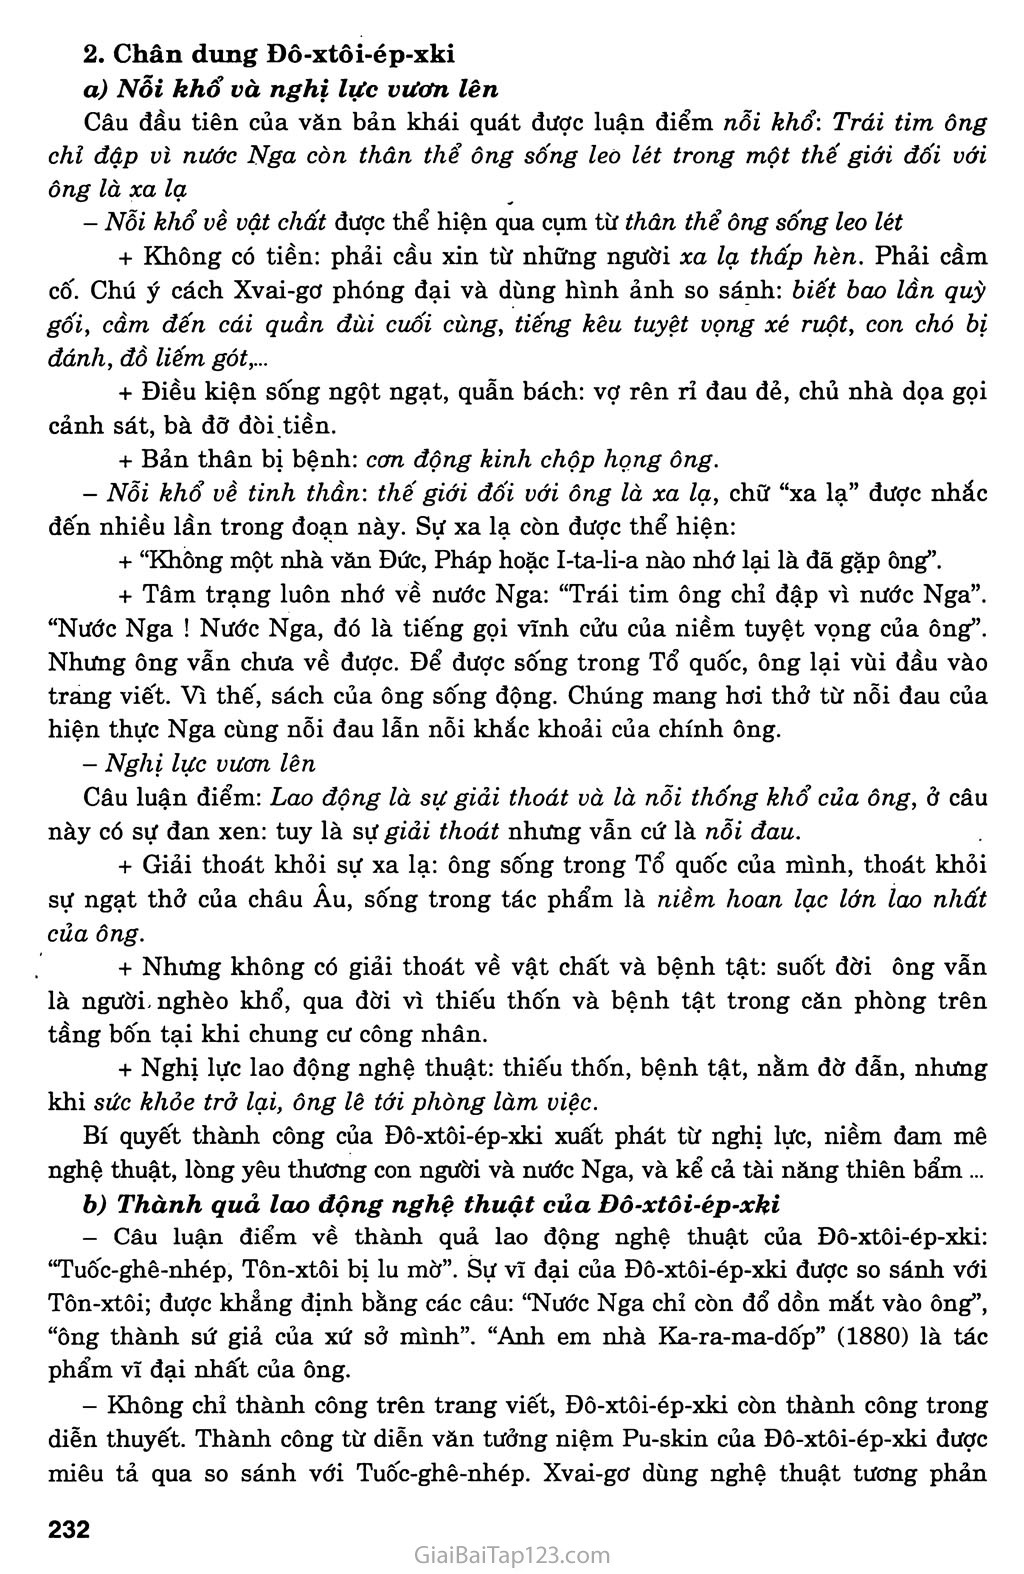 Đô - xtôi - ép - xki (Xvai - gơ) trang 3